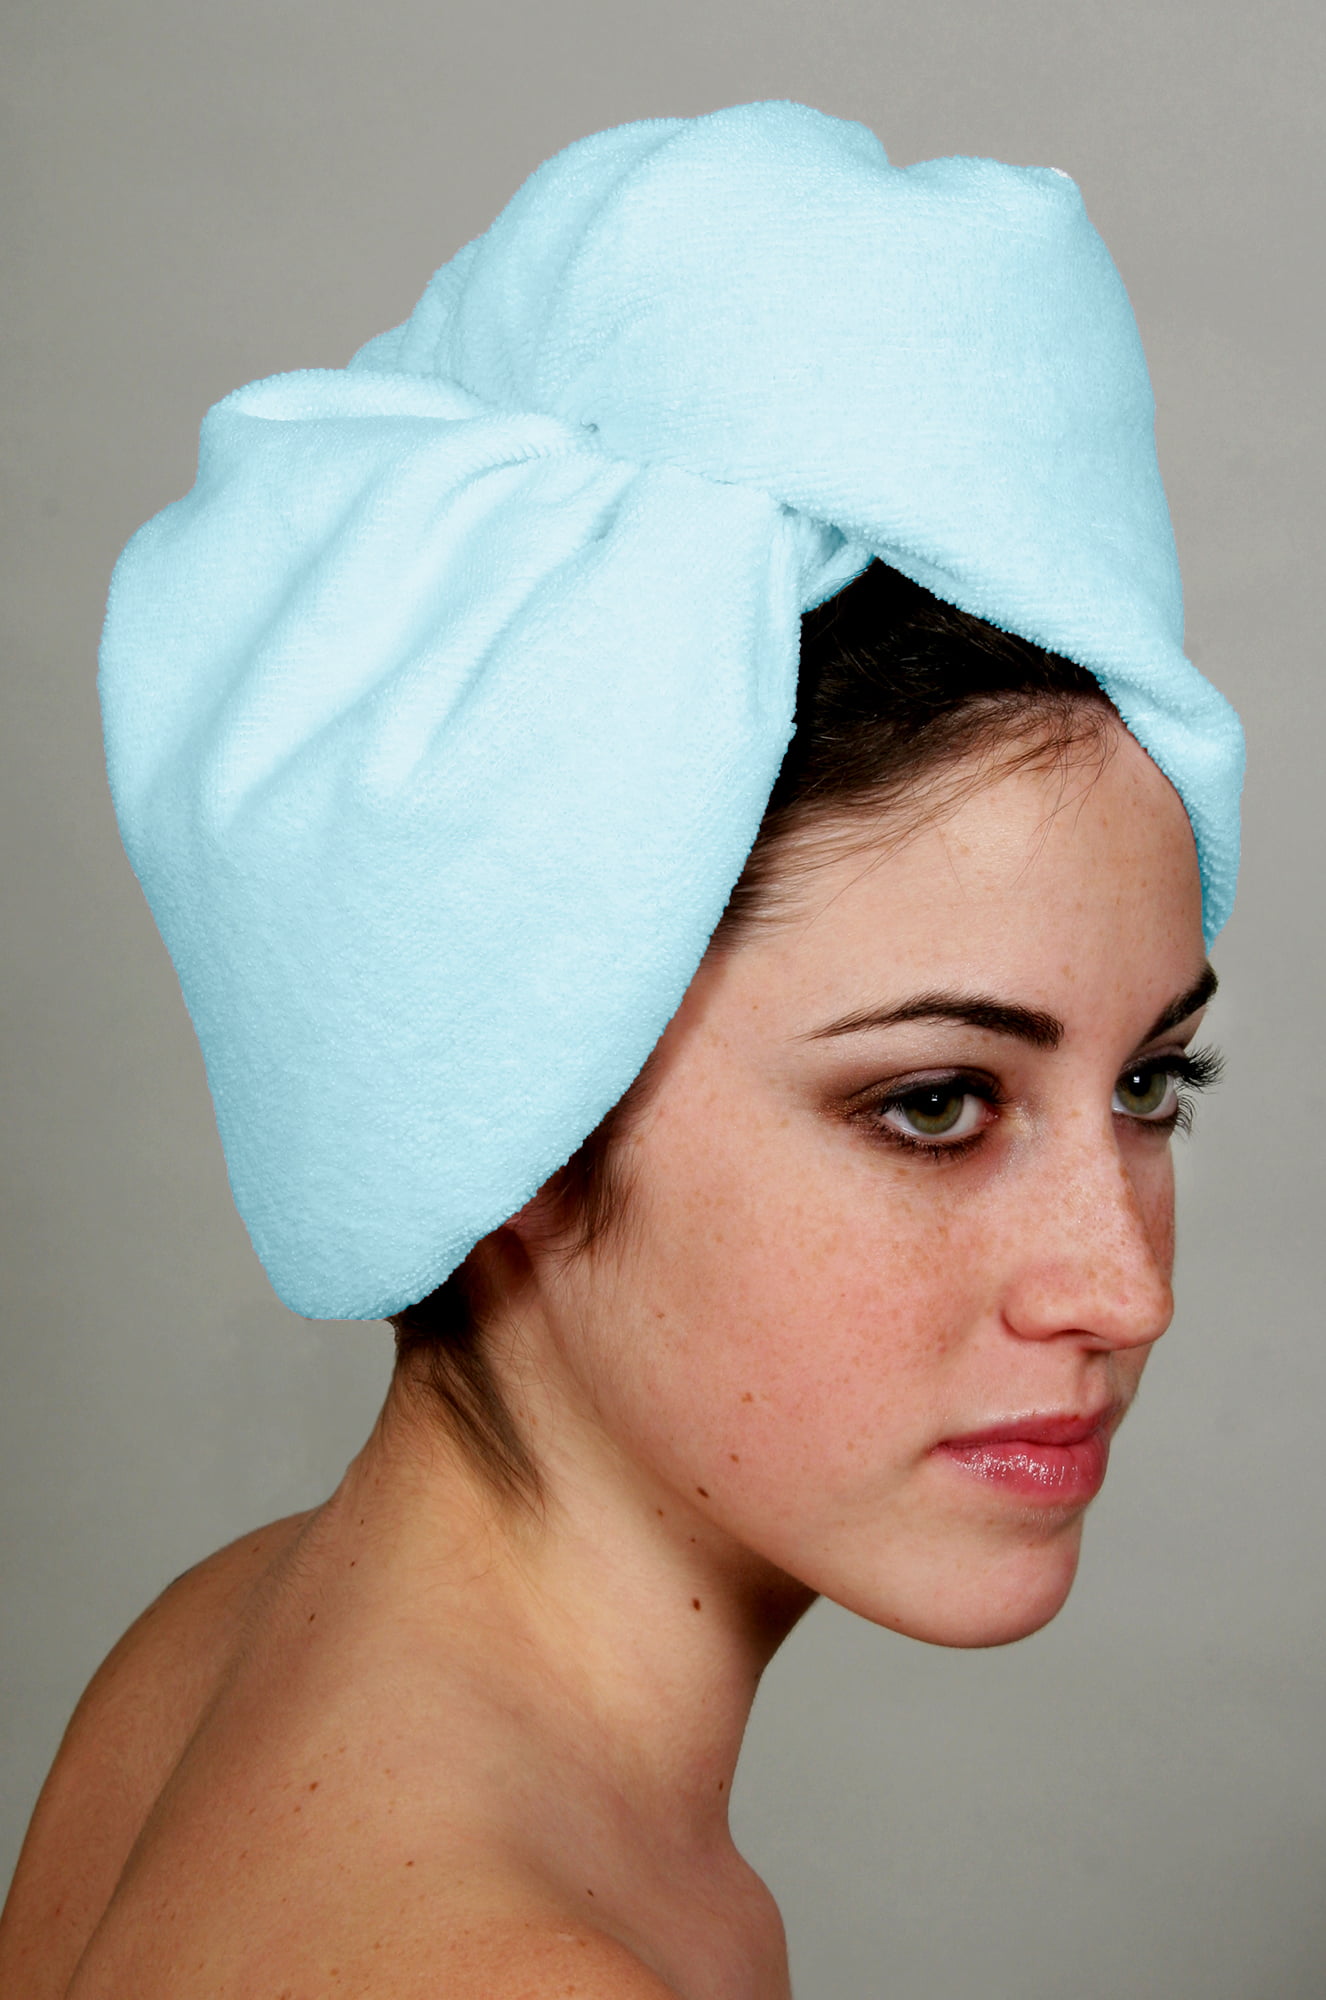 Eurow Microfiber Hair Towel Turban Wrap Blue Pack Walmart Com